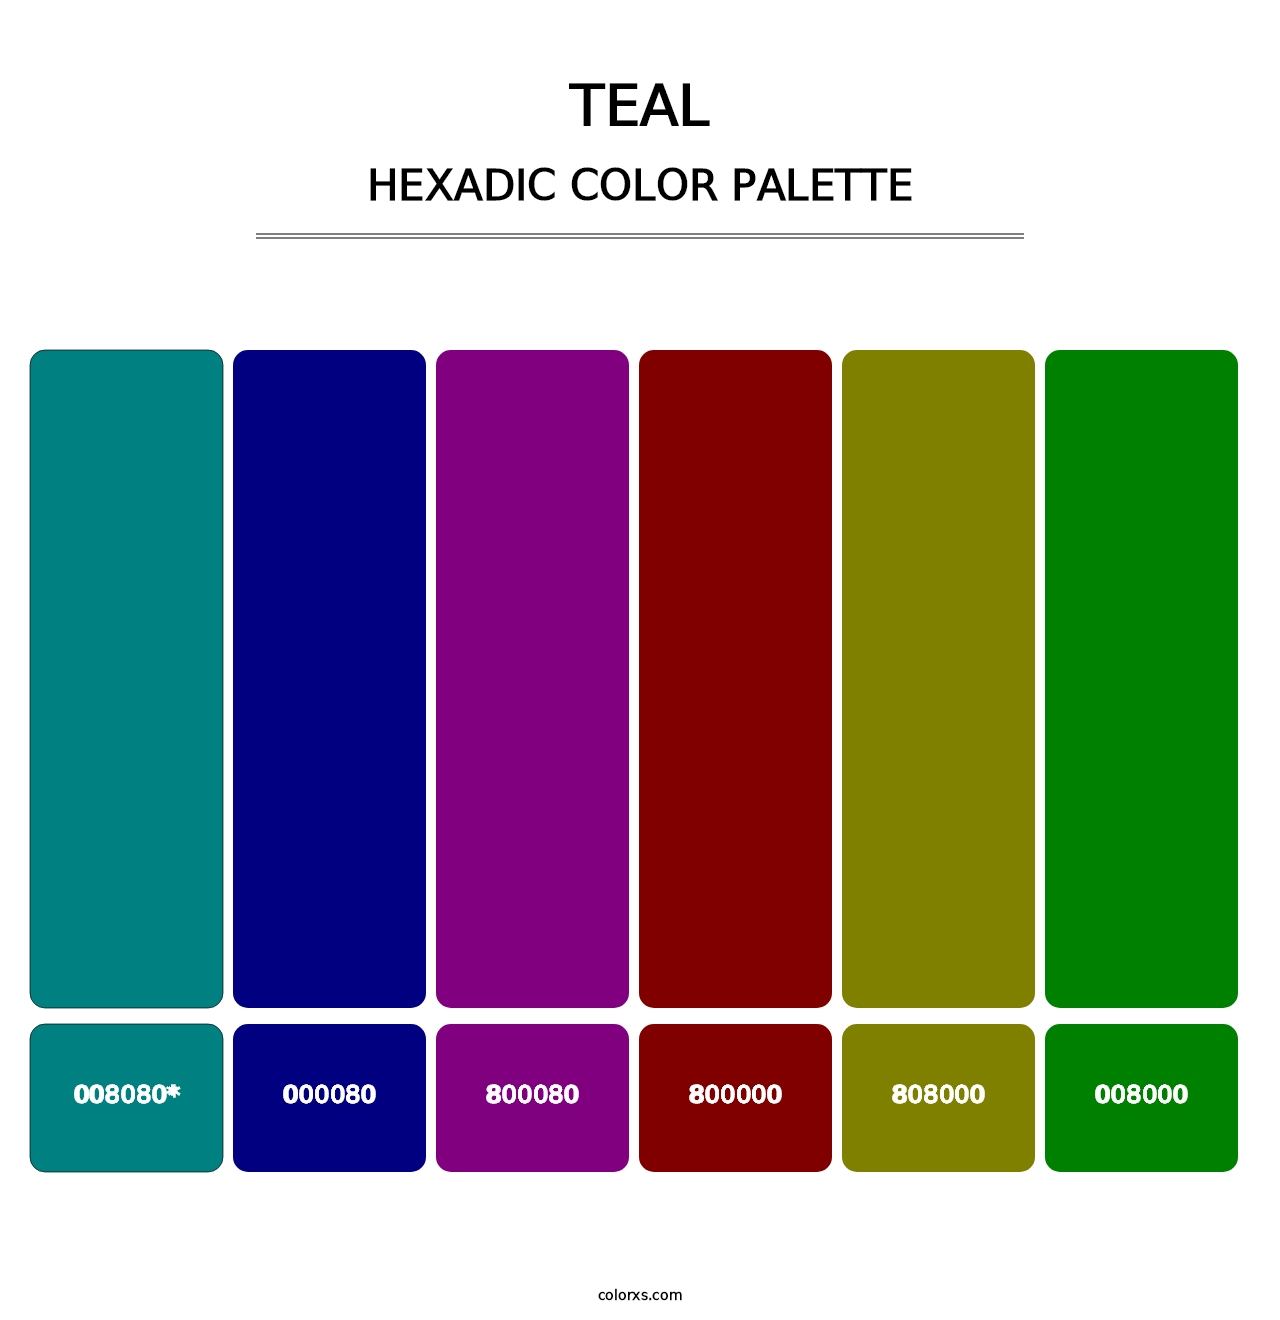 Teal - Hexadic Color Palette